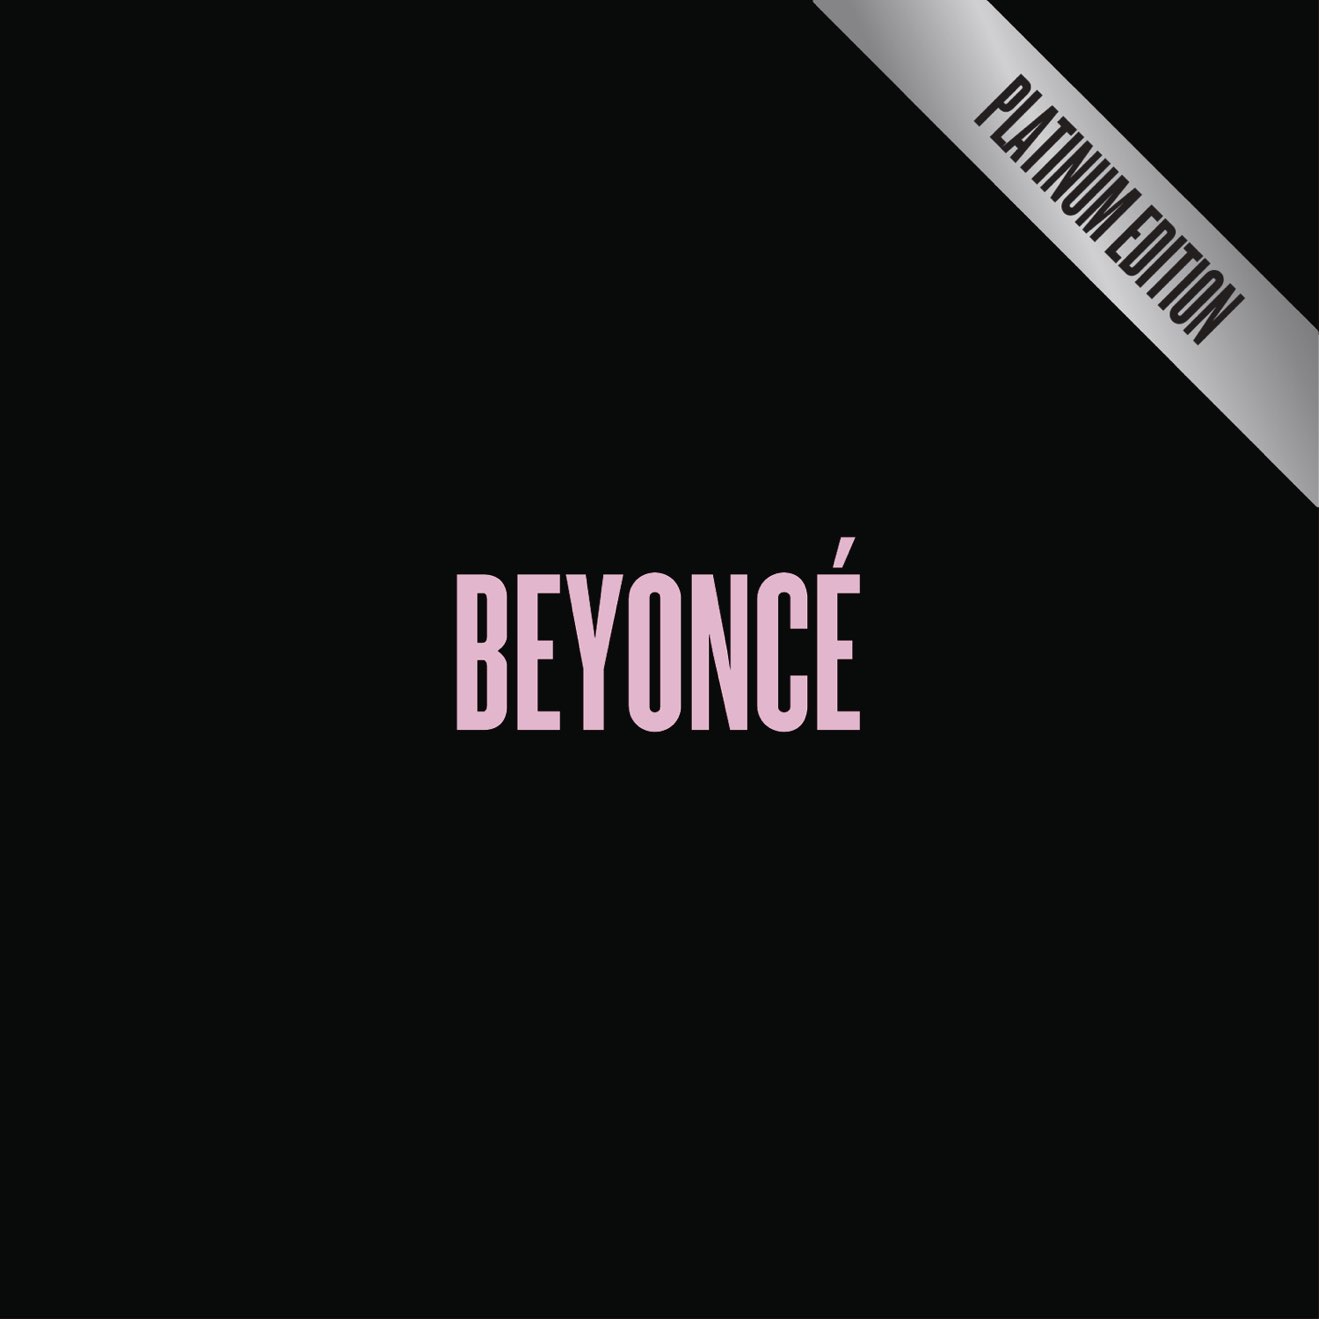 Beyoncé – BEYONCÉ (Platinum Edition) (2013) [iTunes Match M4A]